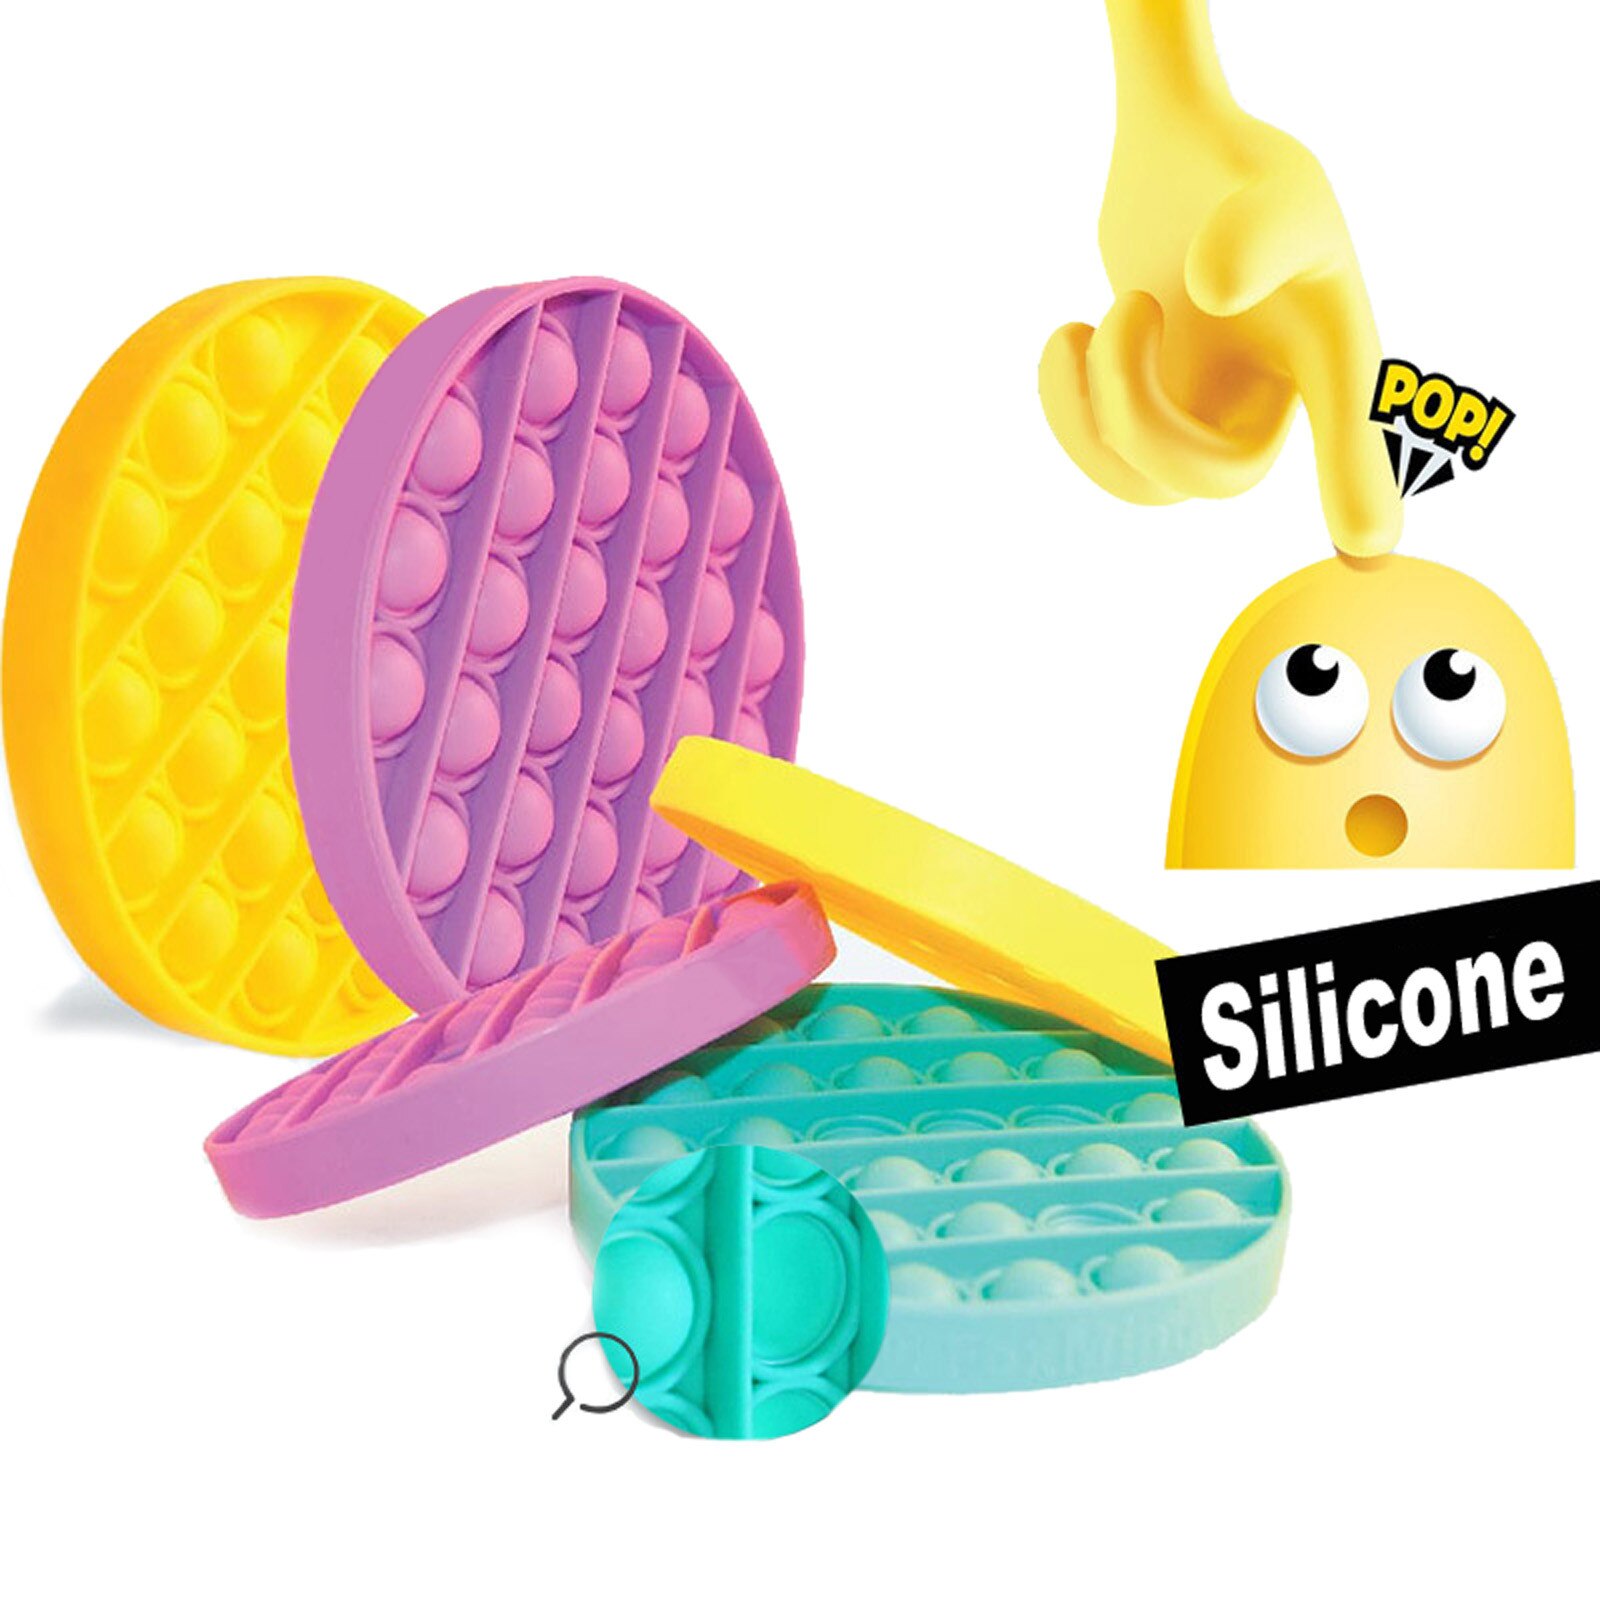 Antistress Speelgoed Fidget Spinner Popit Speelgoed Push Bubble Fidget Zintuiglijke Speelgoed Autisme Speciale Behoeften Stress Reliever Stress Reliever